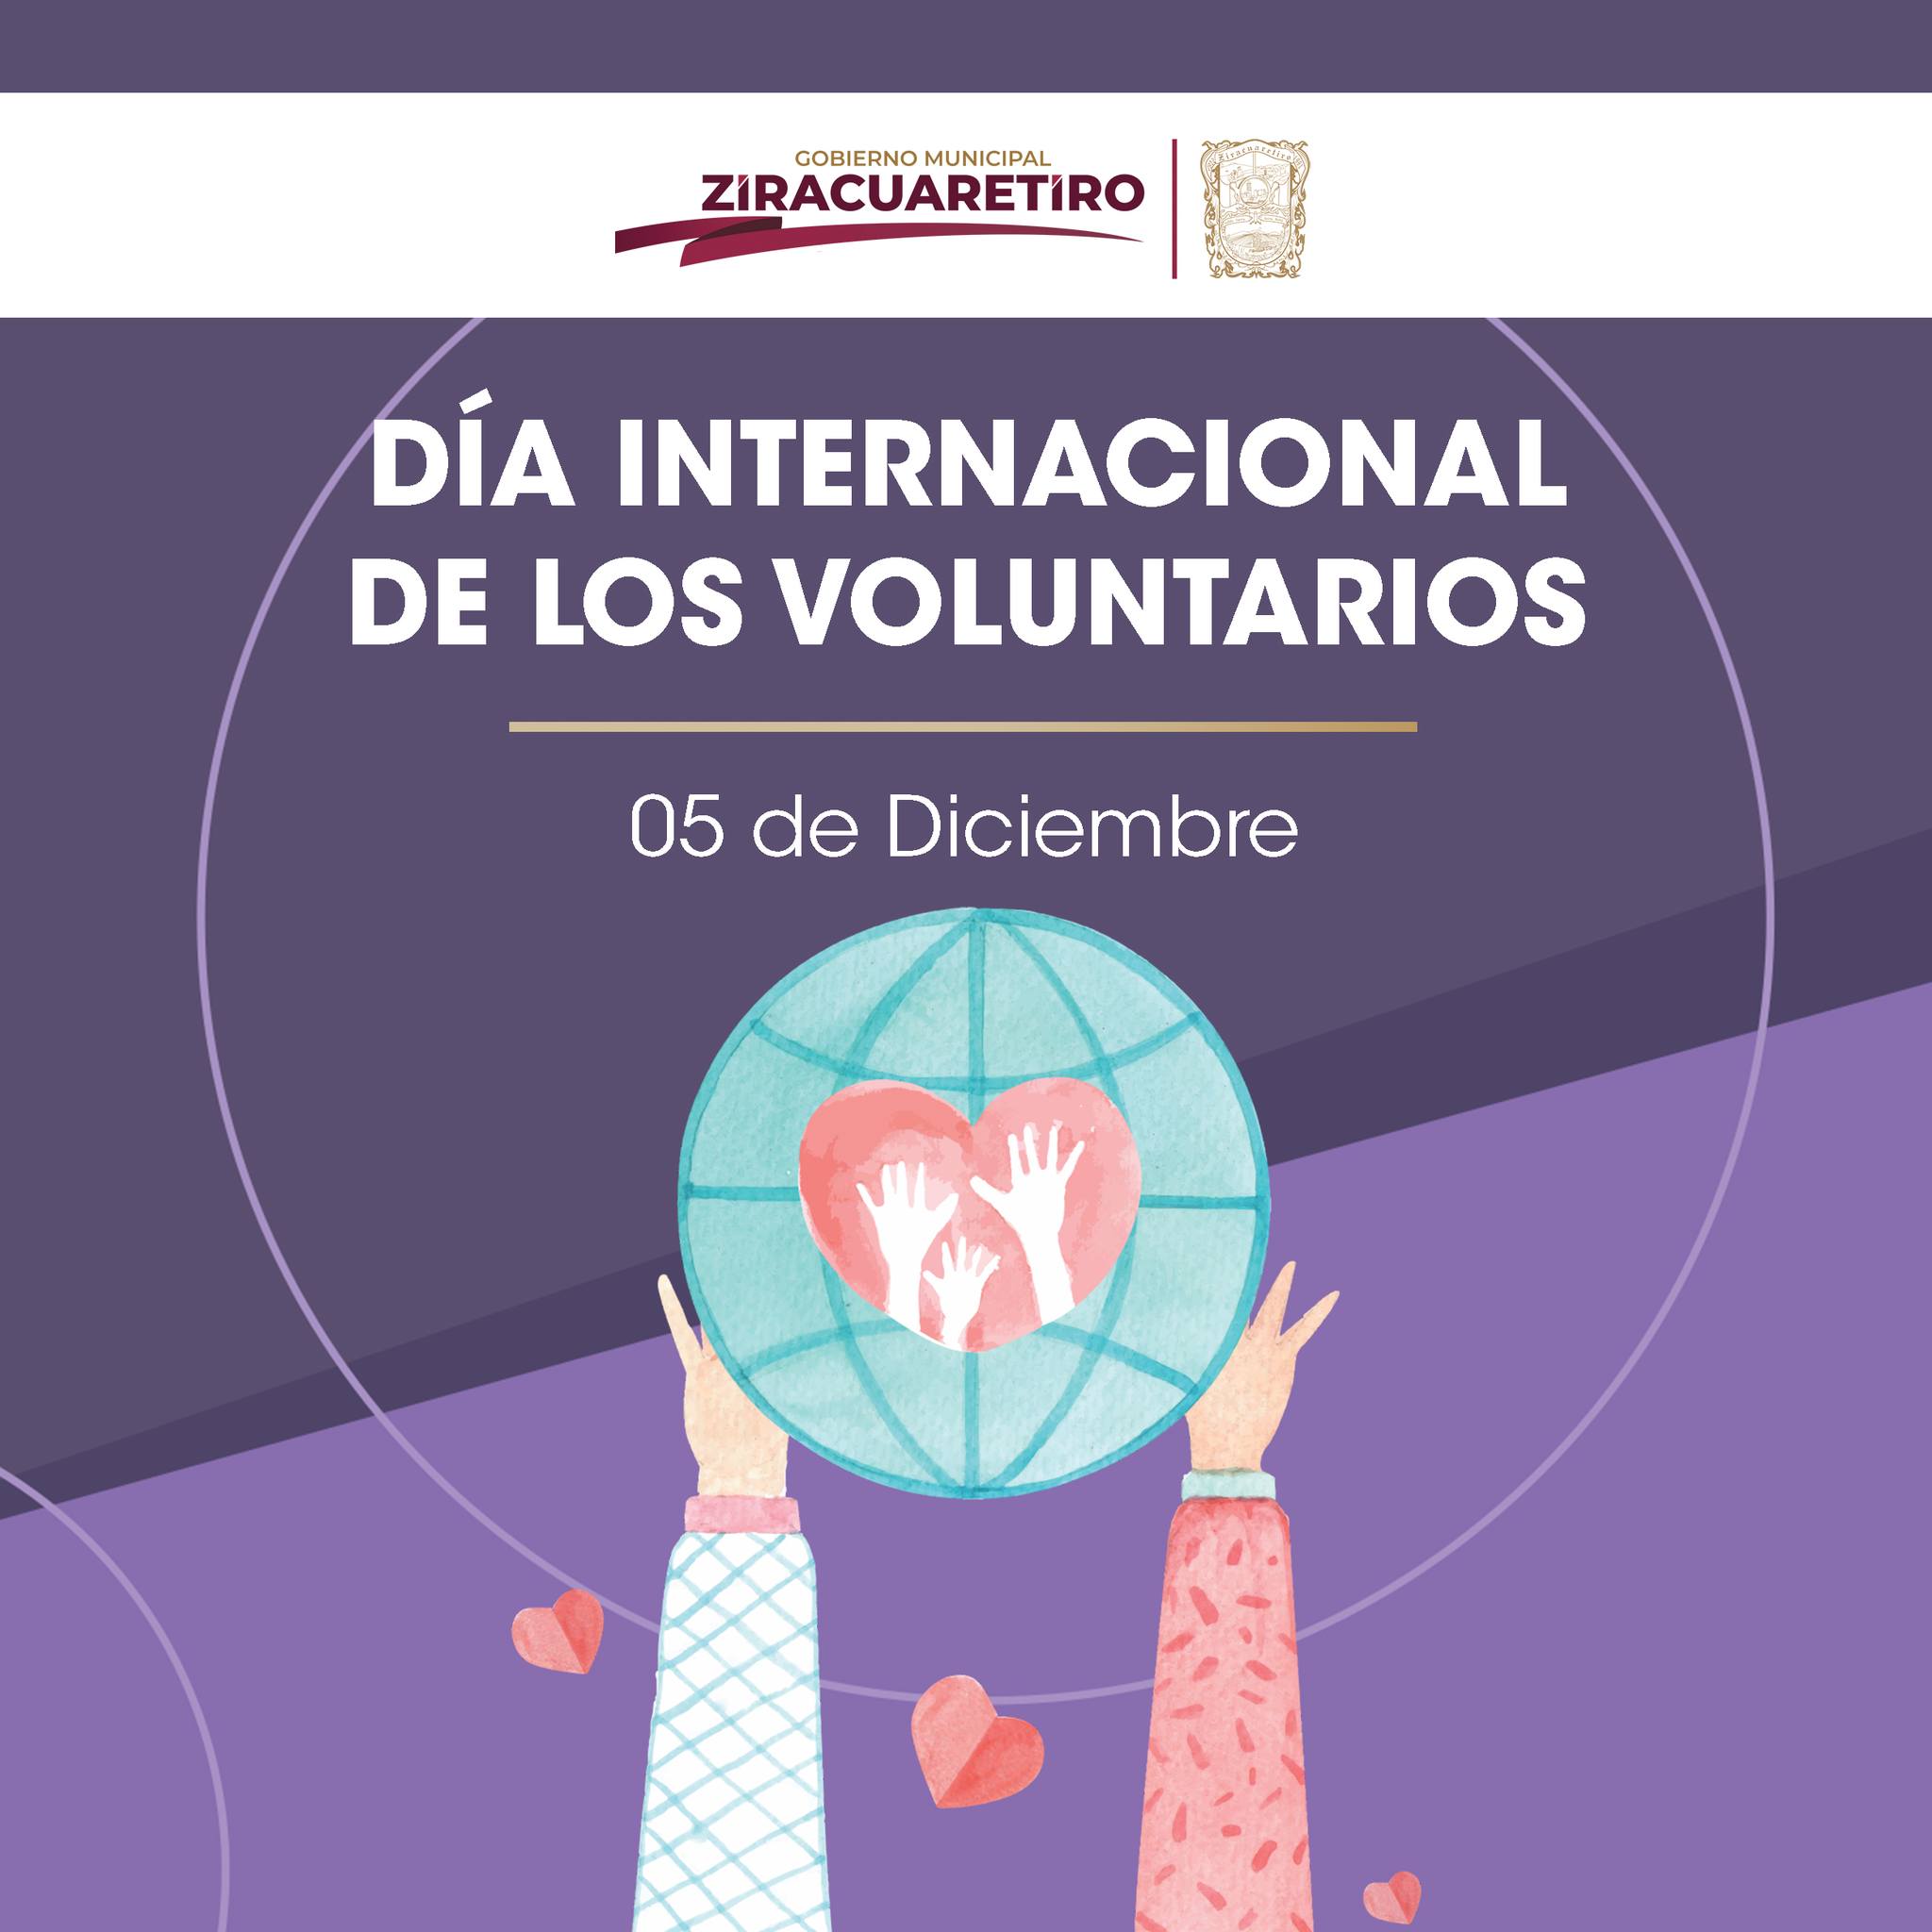 Día Internacional de los Voluntarios...